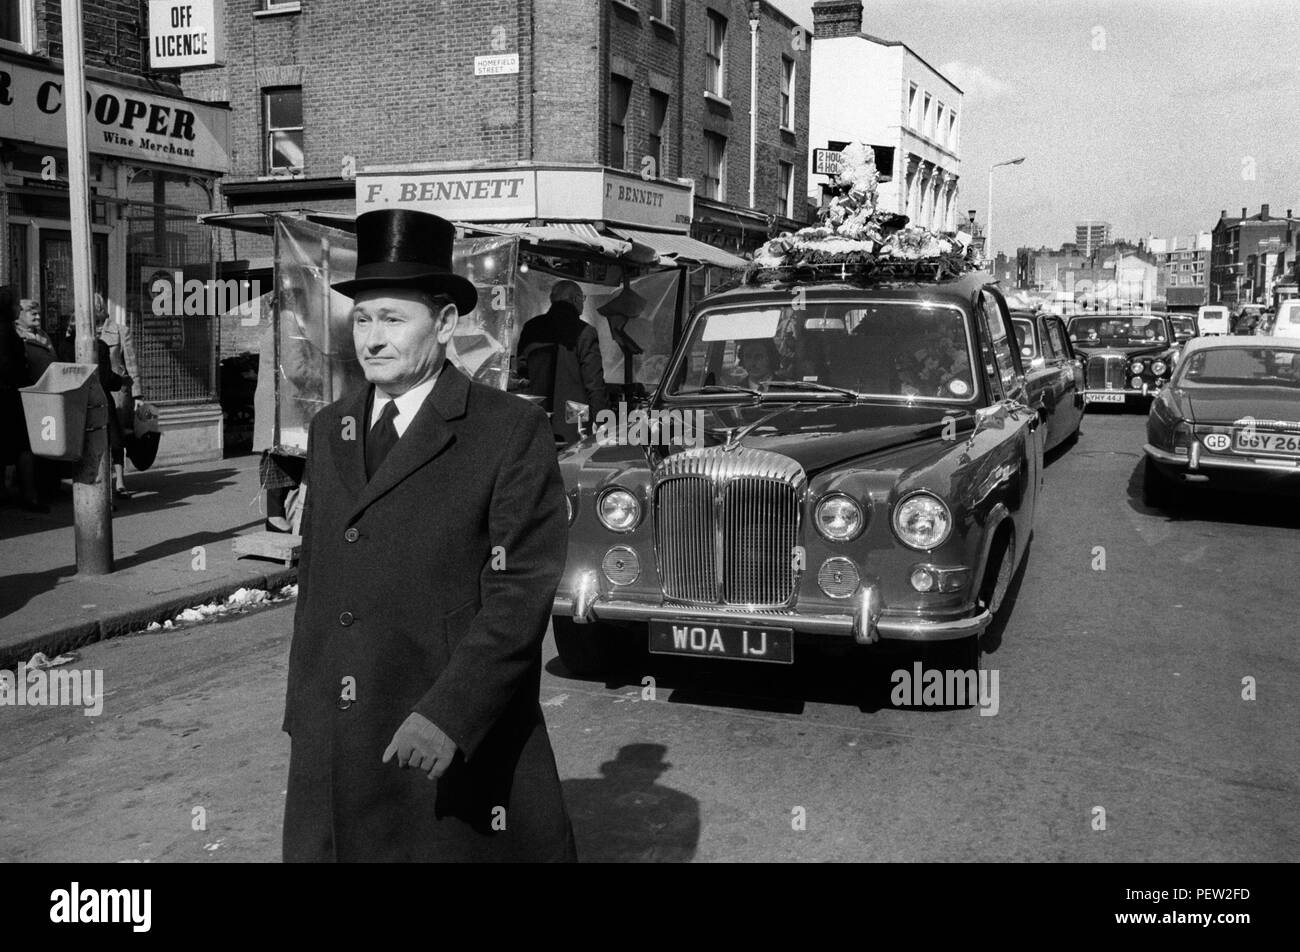 Funeral de Londres de 1970. Hoxton director funeral oficial en su top hat camina en frente carroza automóviles siga en procesión Hoxton Street 70s Inglaterra HOMER SYKES. Foto de stock